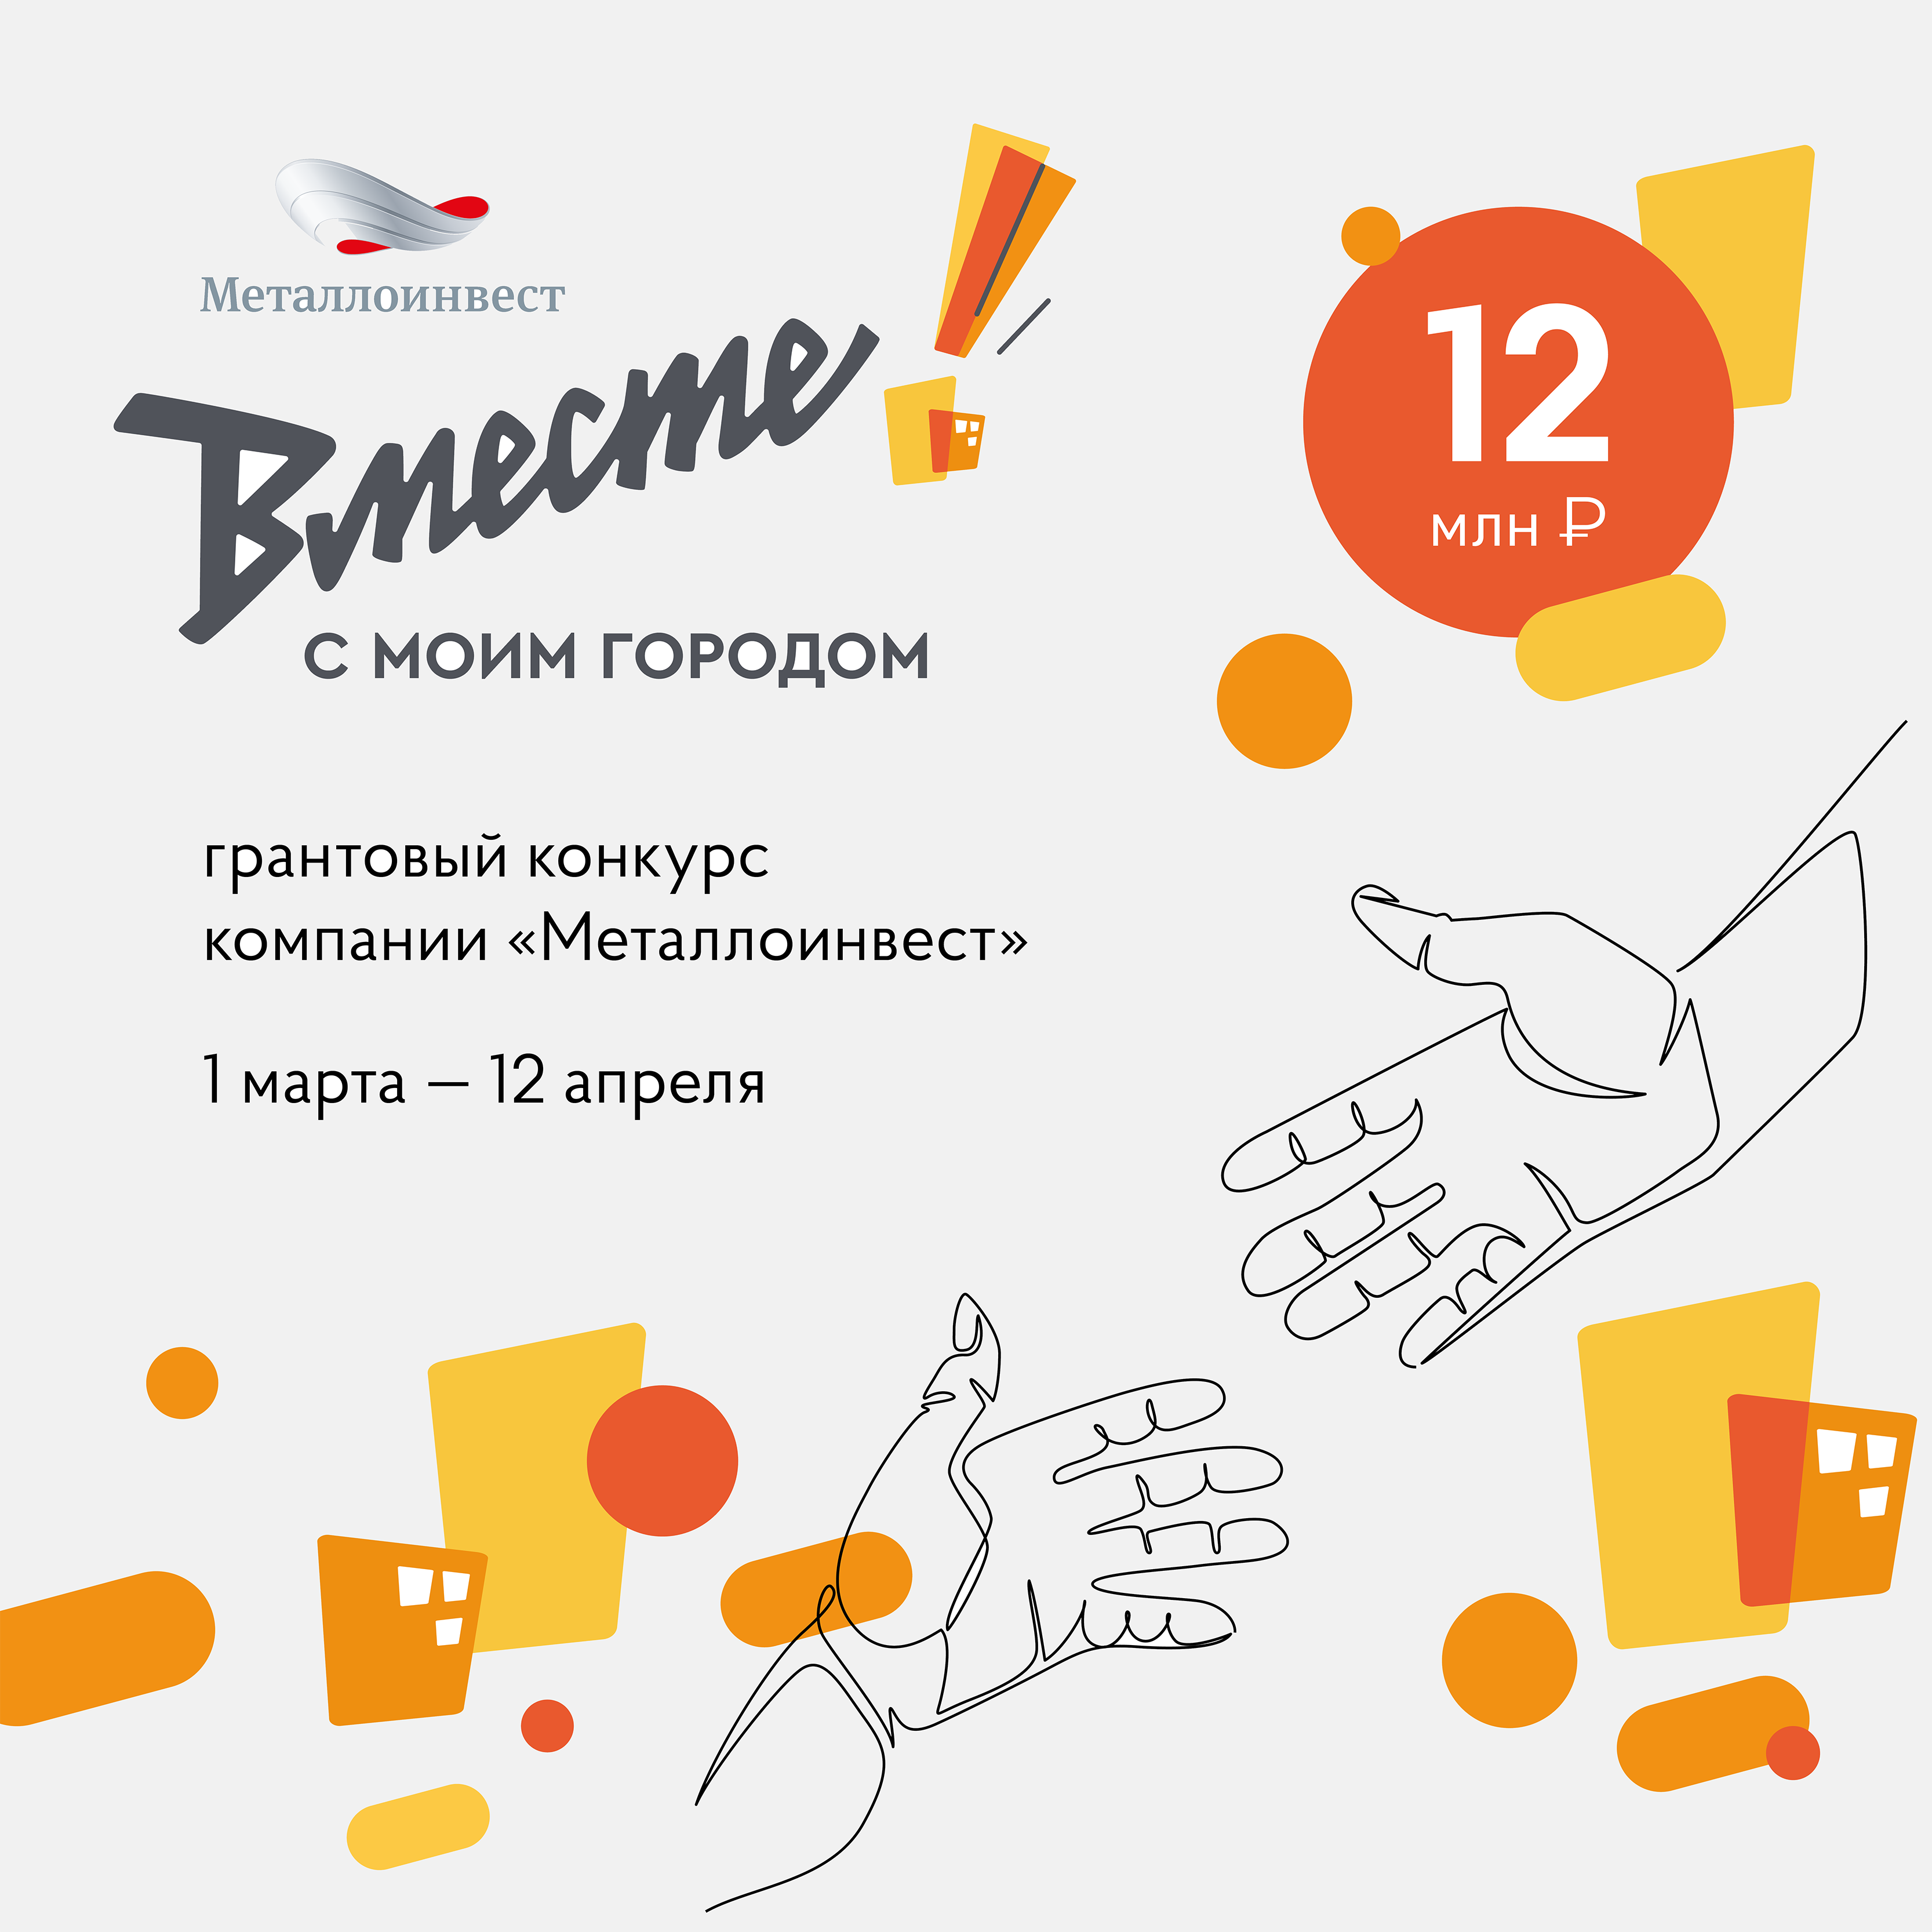 В Железногорске стартовал VI грантовый конкурс компании «Металлоинвест»